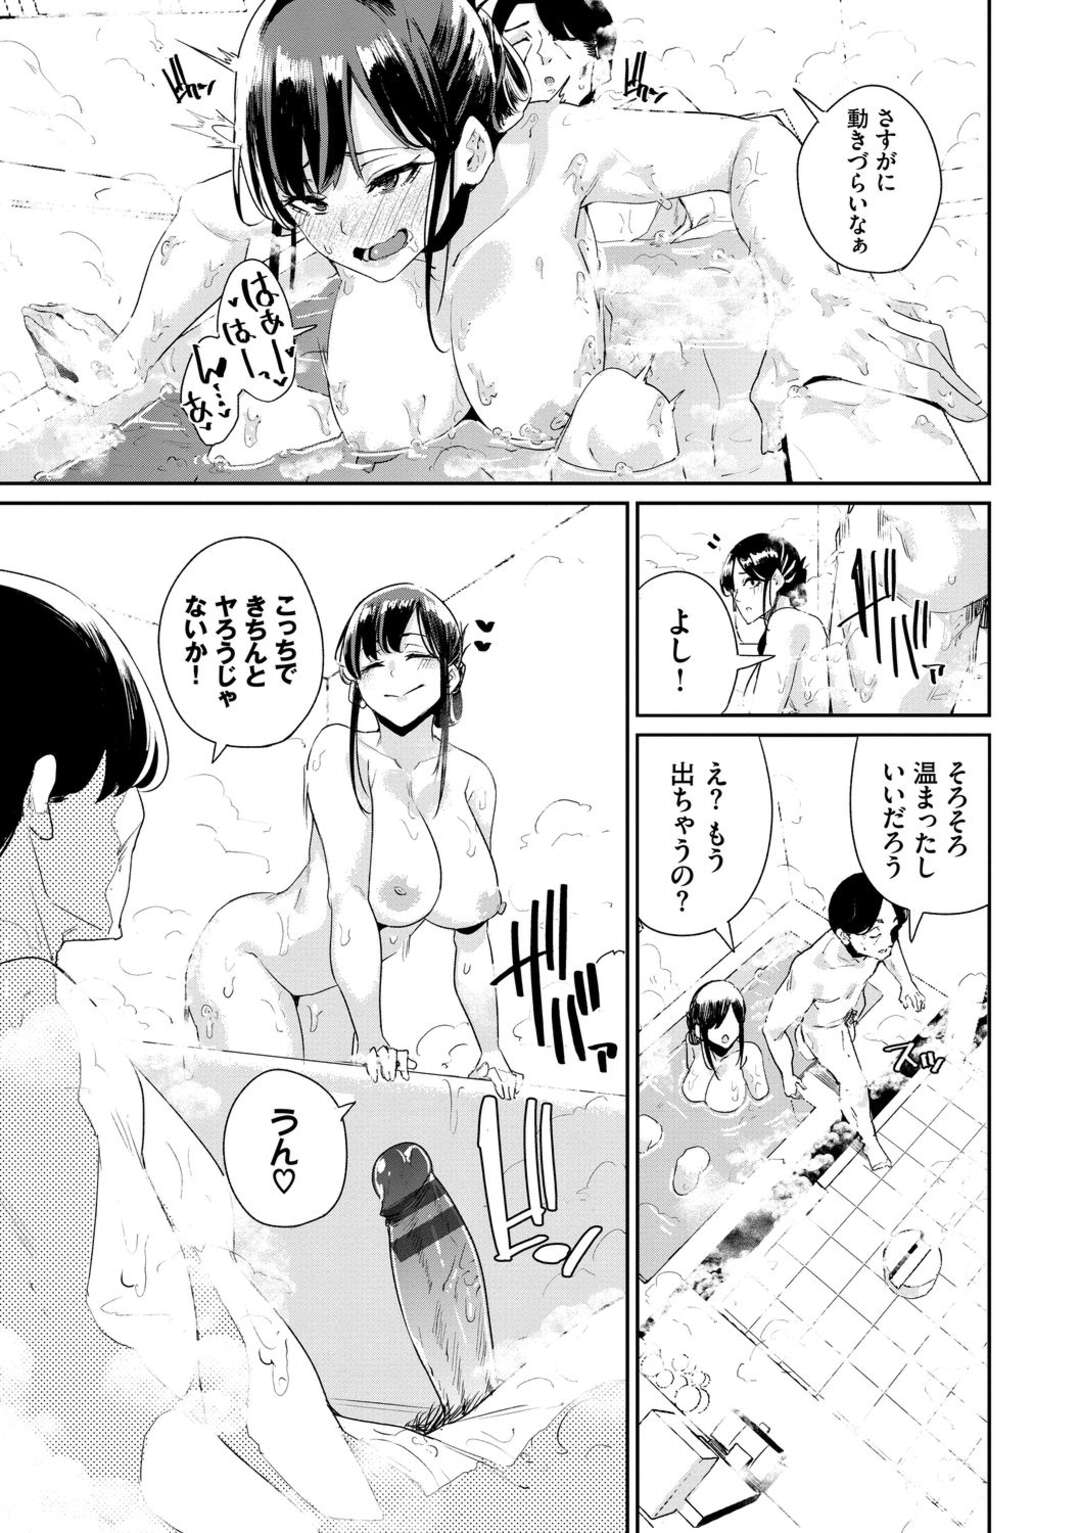 【エロ漫画】お父さんとお風呂に入るのが日課の巨乳JK…洗いっこからのローション風呂でイチャイチャ近親相姦。【yumoteliuce】